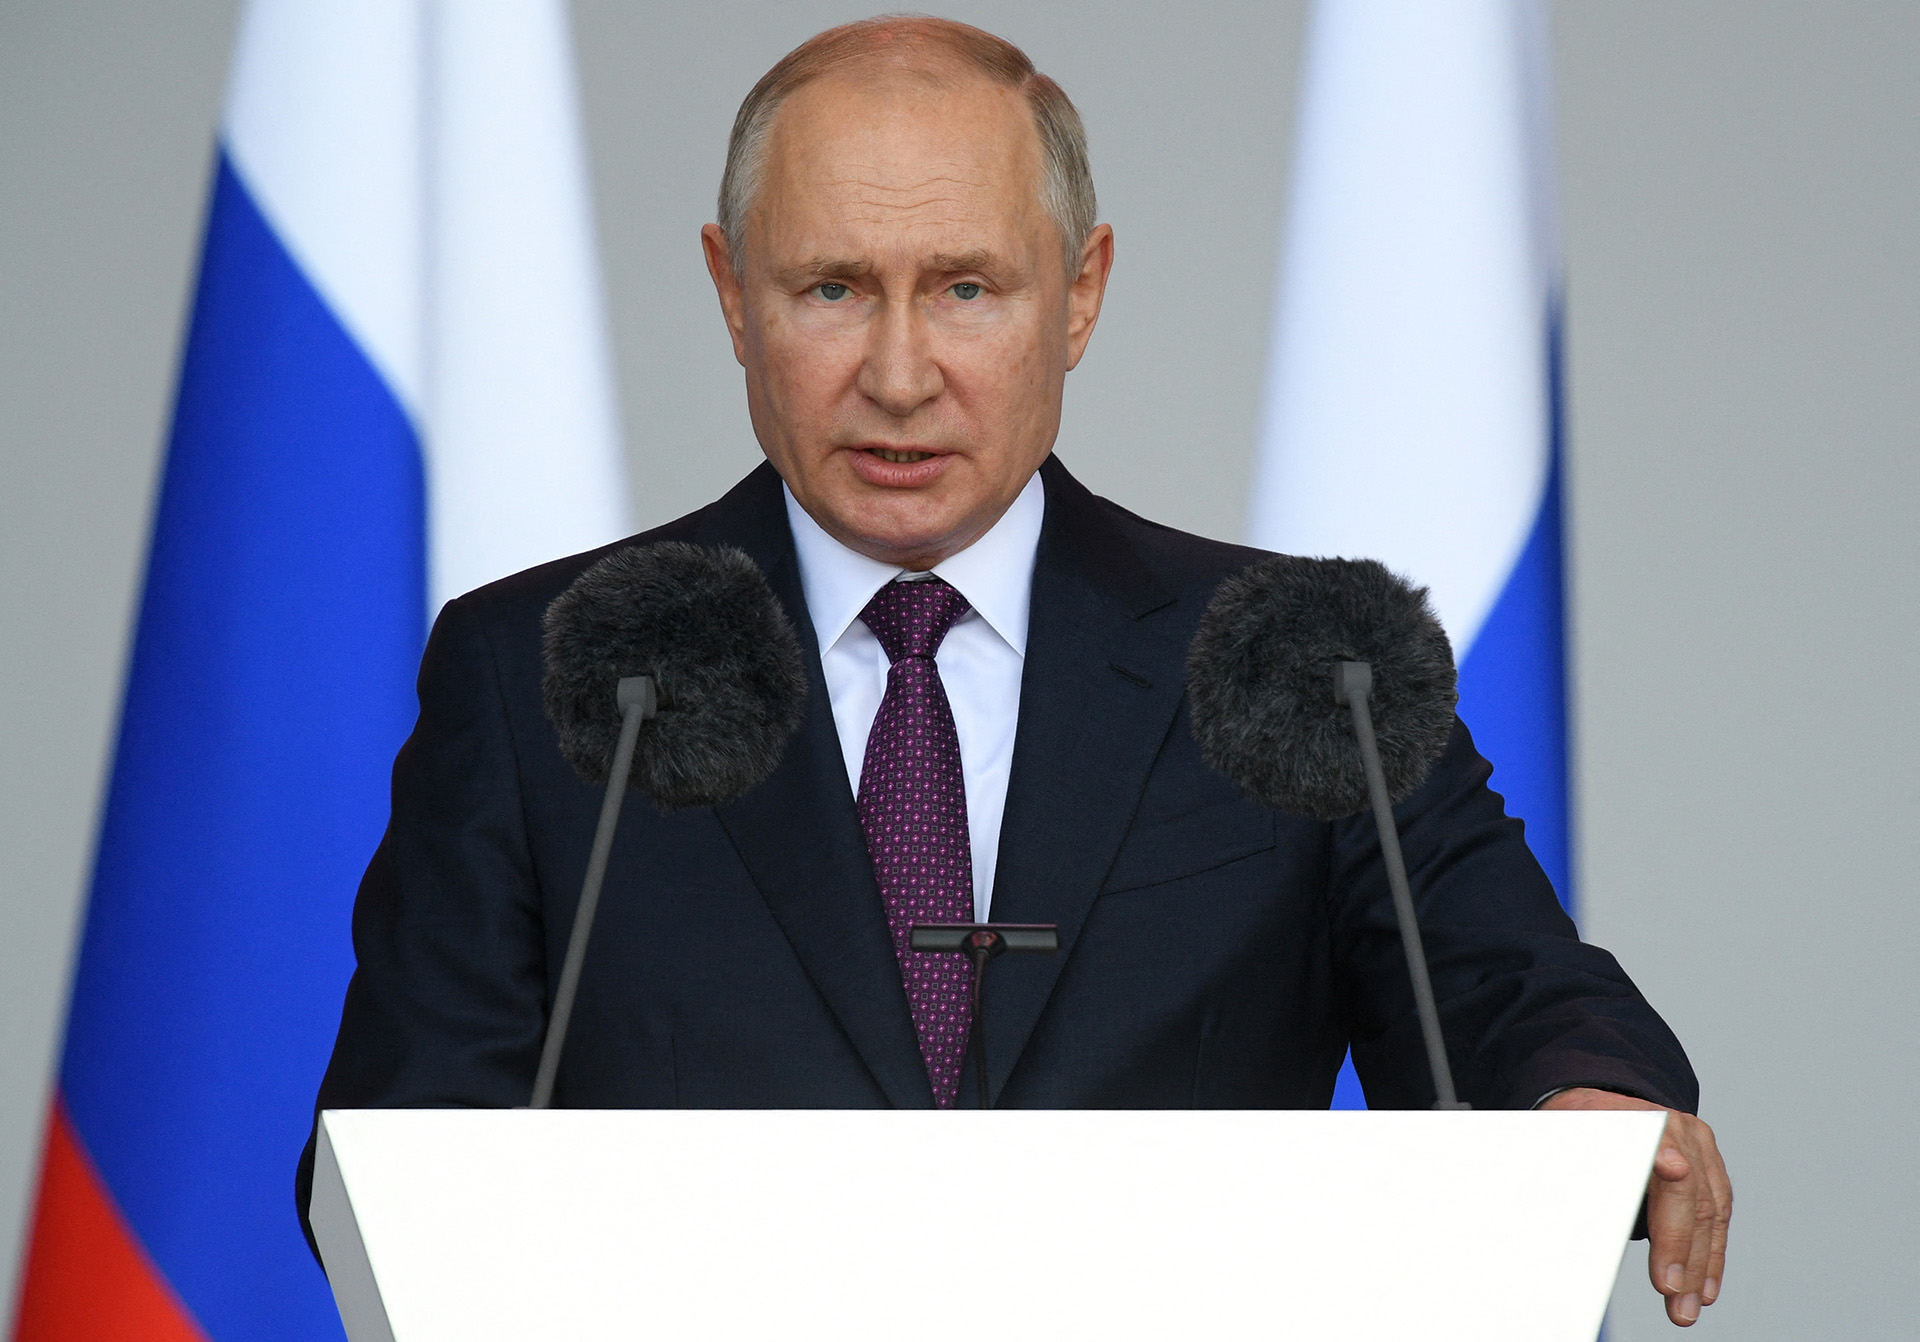 Putyin: A fő összecsapások nem az ukrán reguláris erőkkel történnek